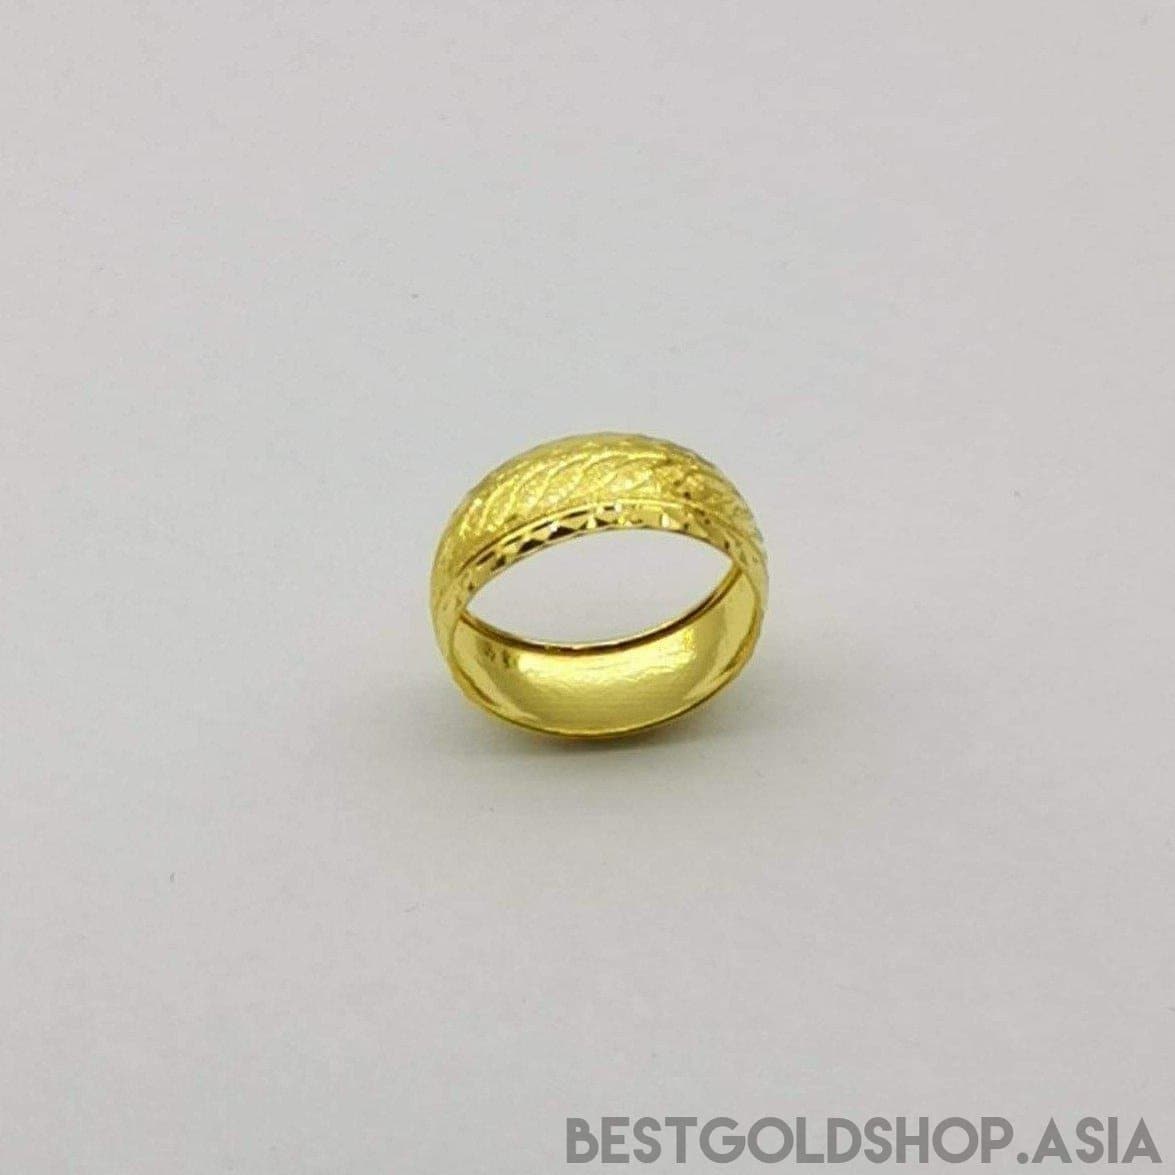 22k / 916 Gold Wide Hollow Ring Design 4-916 gold-Best Gold Shop